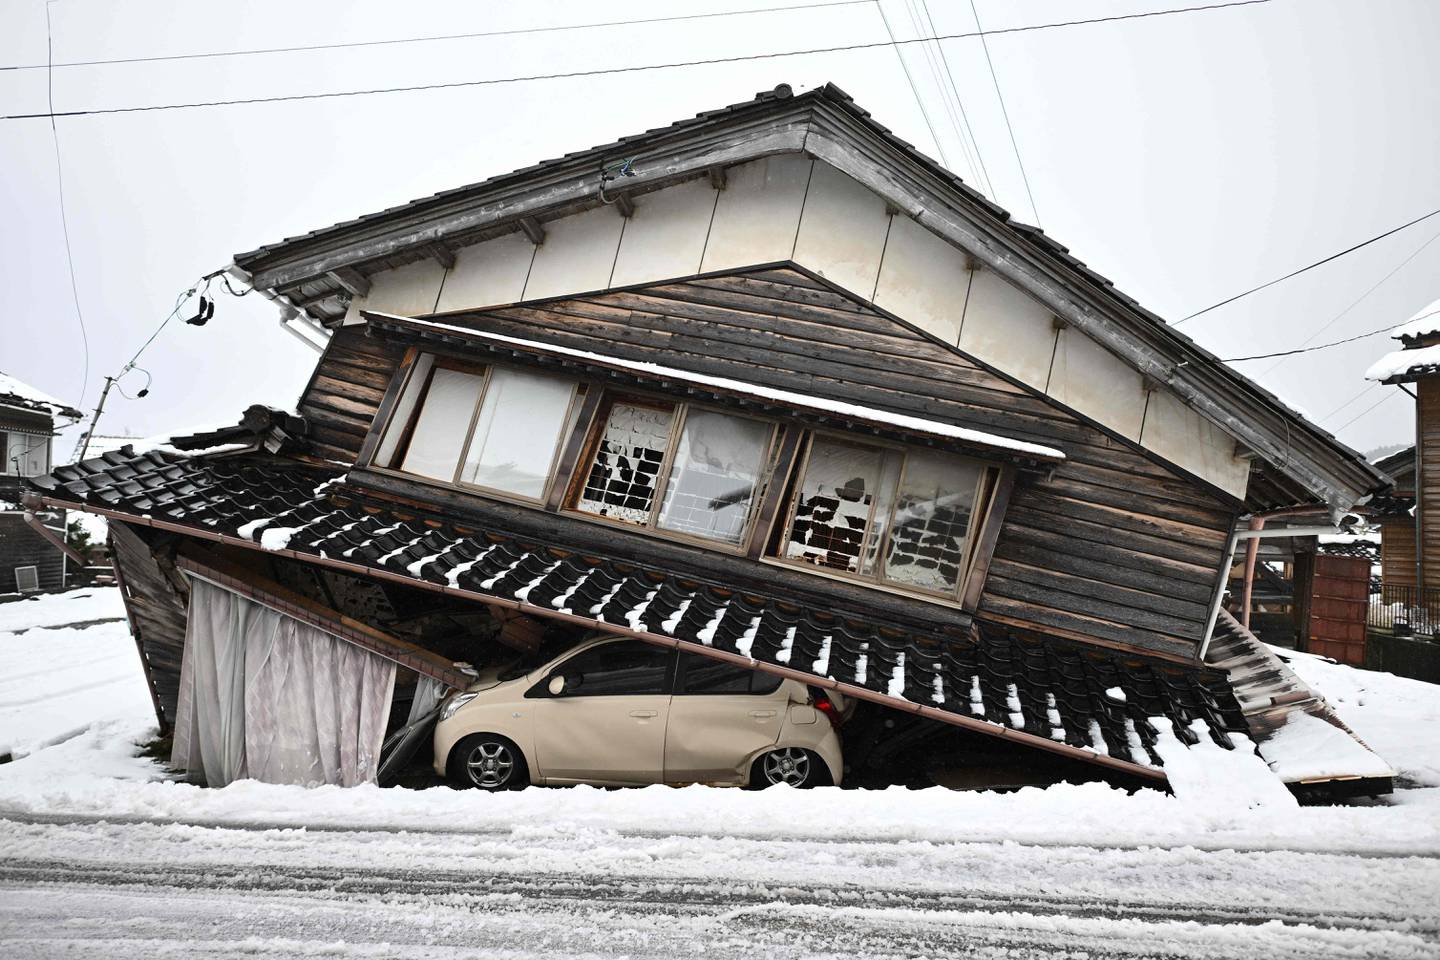 Un automóvil dañado yace debajo de un edificio derrumbado en la ciudad de Shika en el distrito de Hakui, prefectura de Ishikawa después de que un gran terremoto de magnitud 7,5 sacudiera la región de Noto el día de Año Nuevo. (Foto de Philip FONG / AFP)